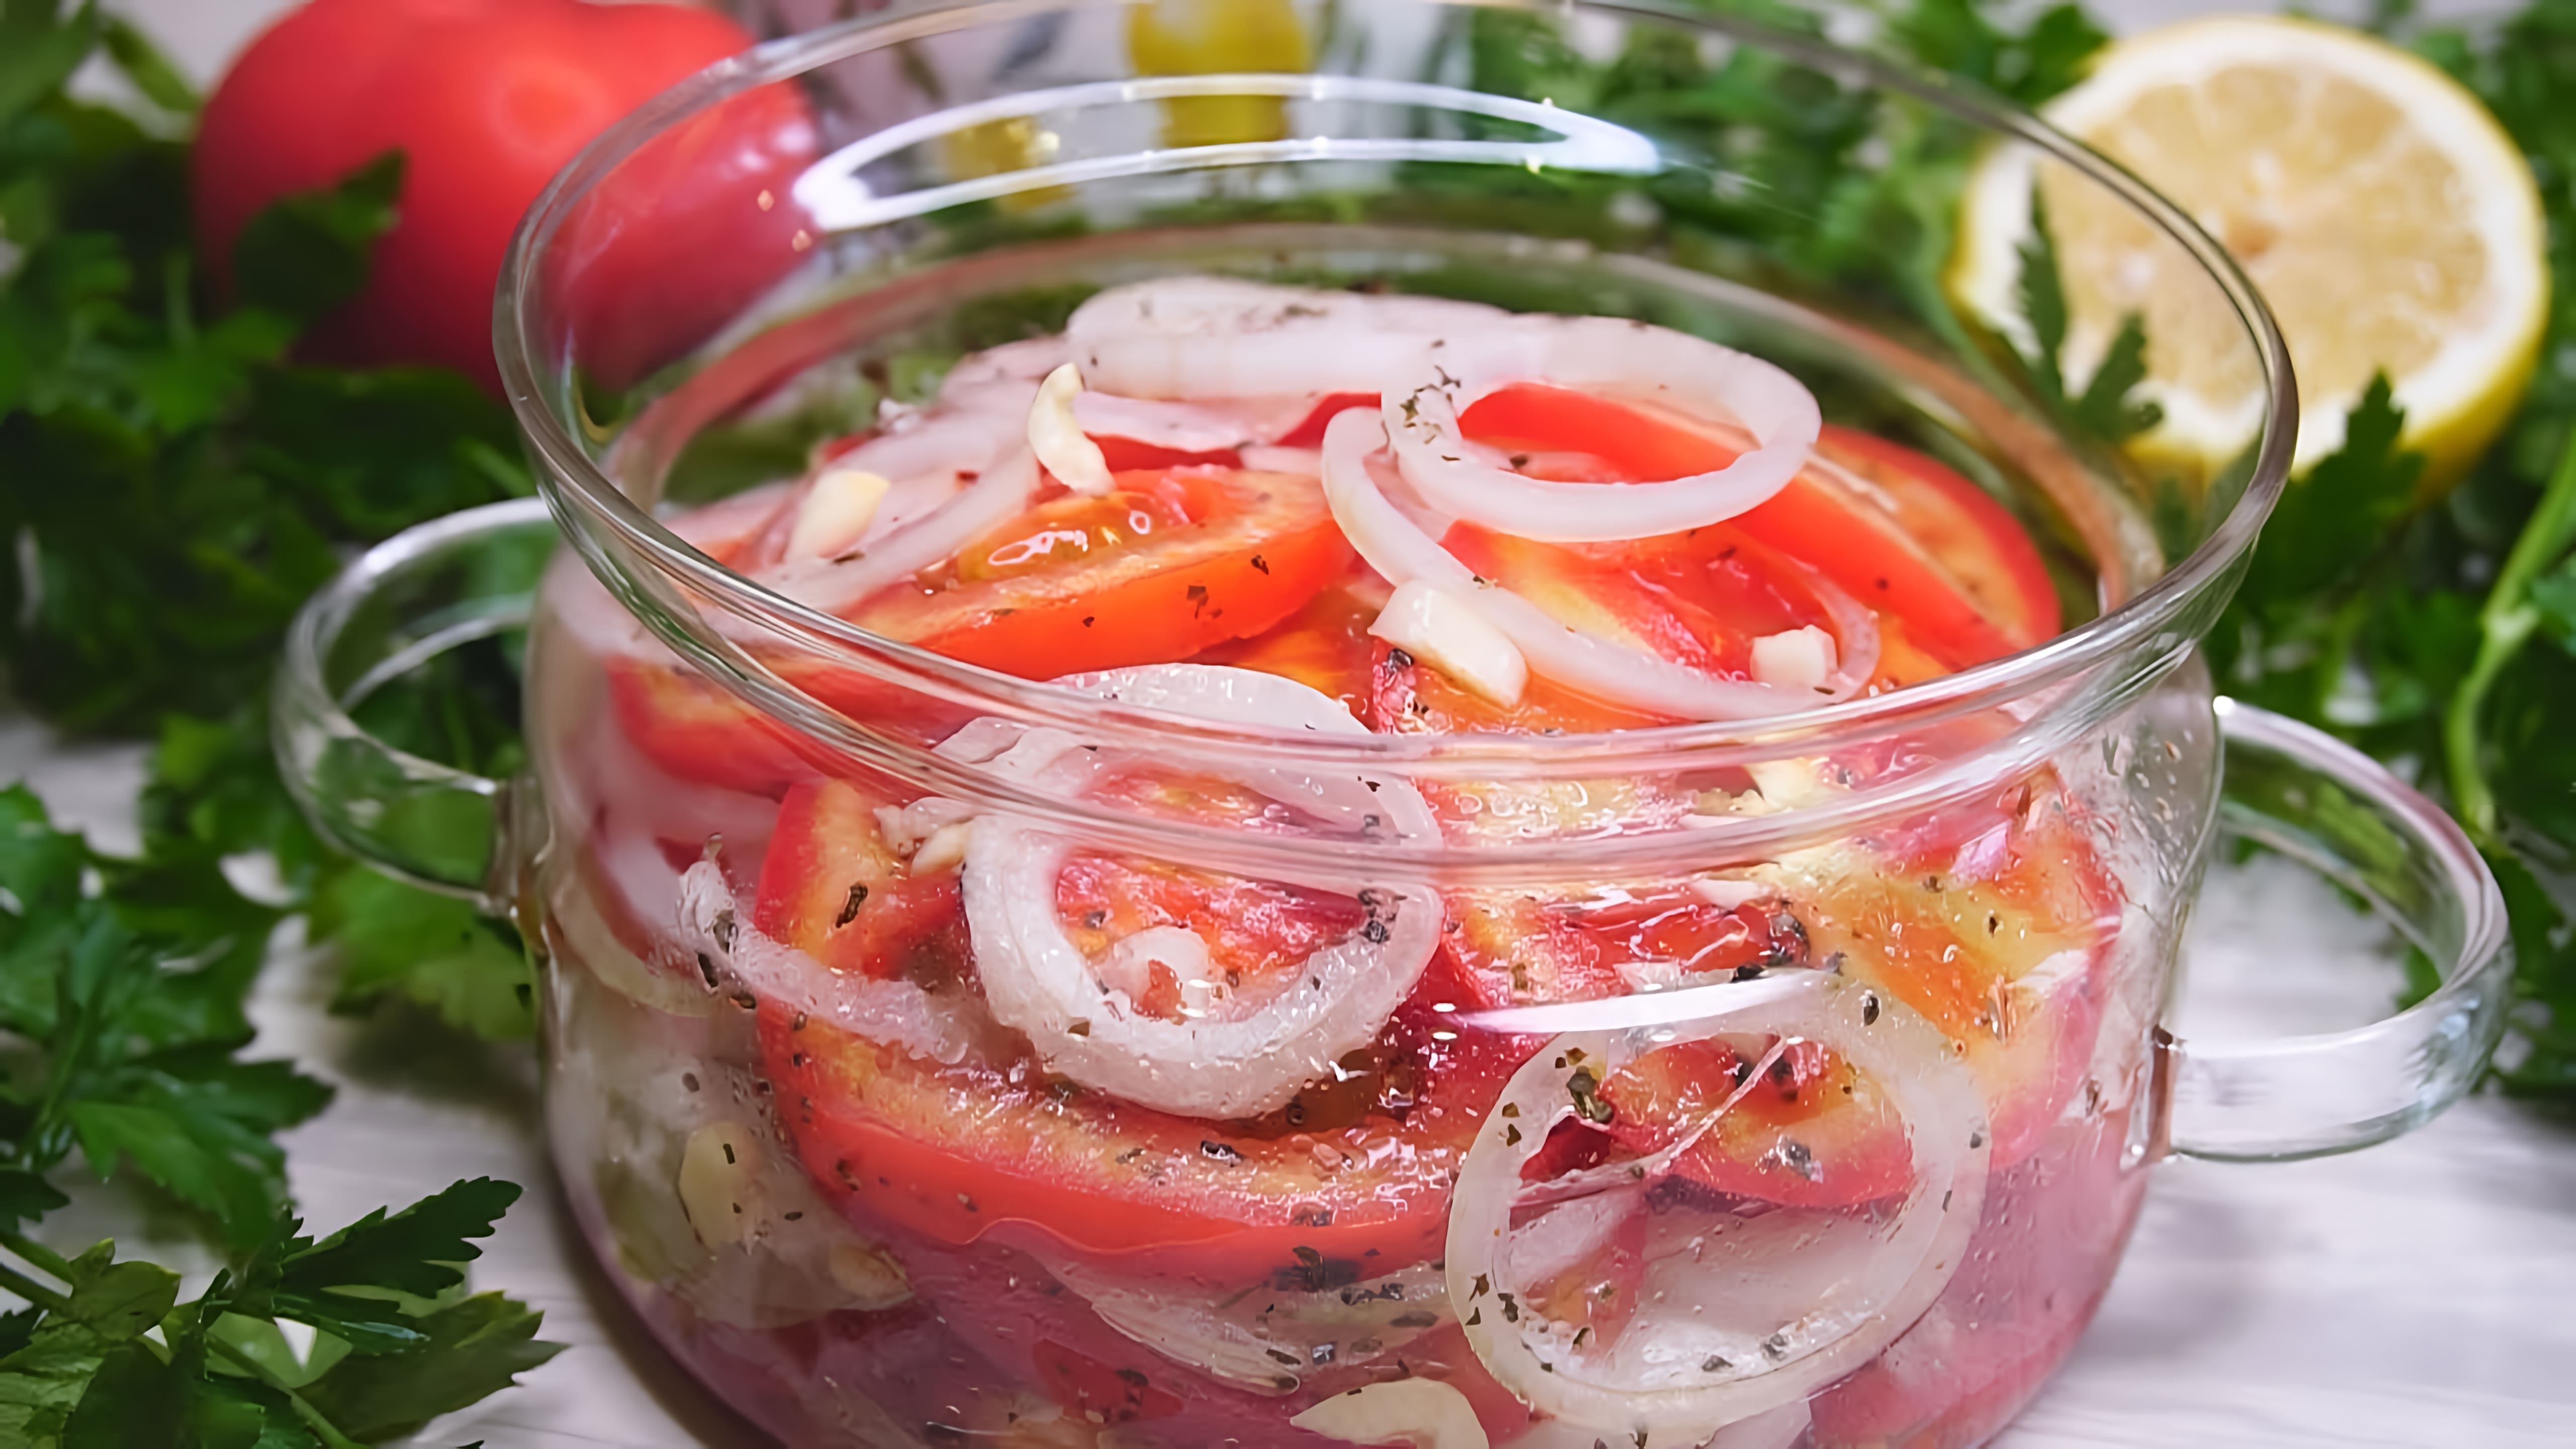 В этом видео демонстрируется рецепт приготовления вкусной закуски из помидоров и лука